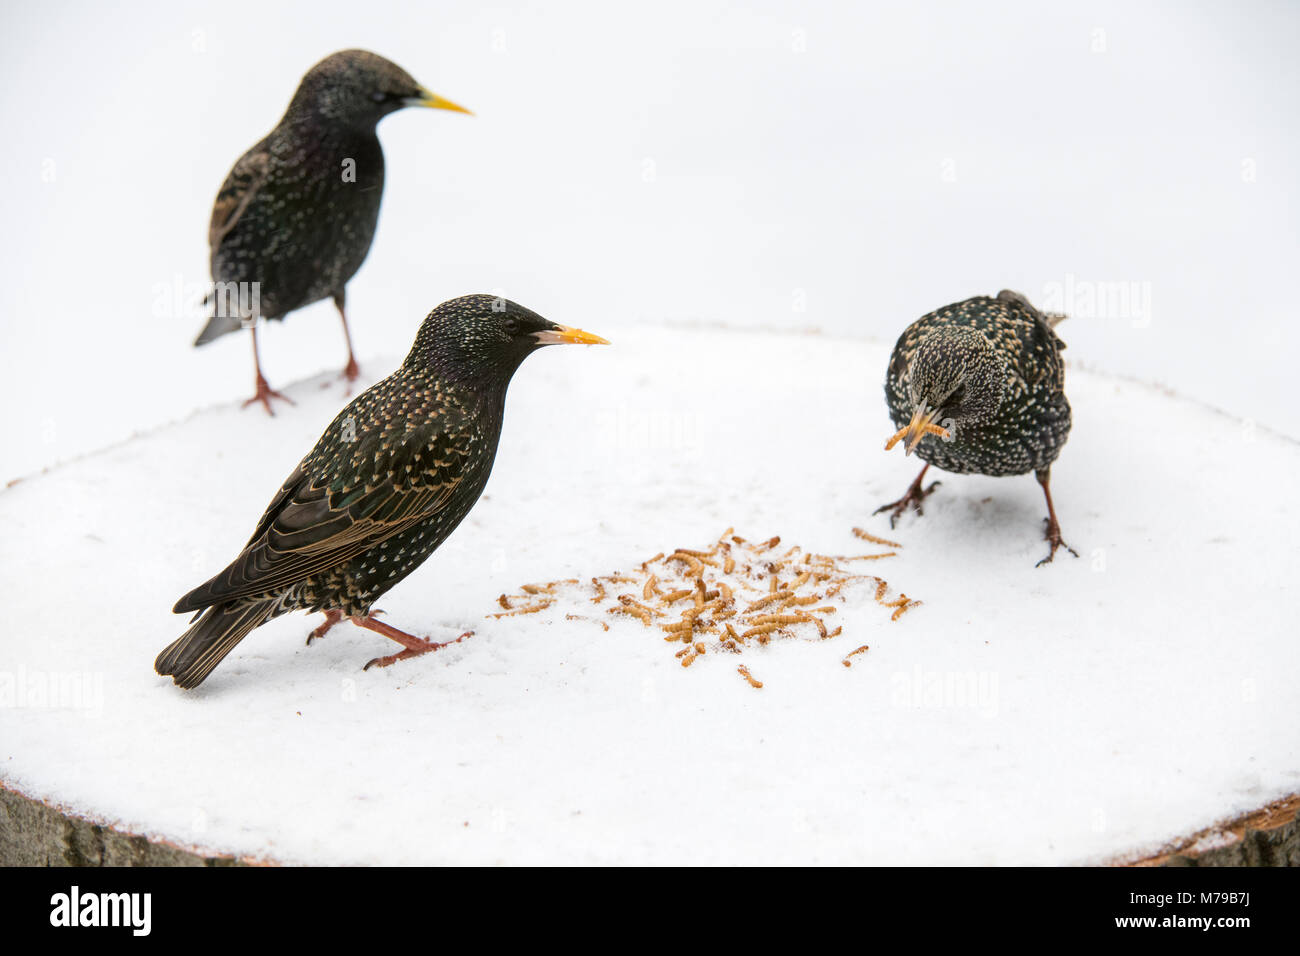 Sturnus vulgaris. Les étourneaux se nourrit de vers de farine sur un arbre en bois table d'oiseaux dans la neige dans un jardin anglais. Février, UK Banque D'Images